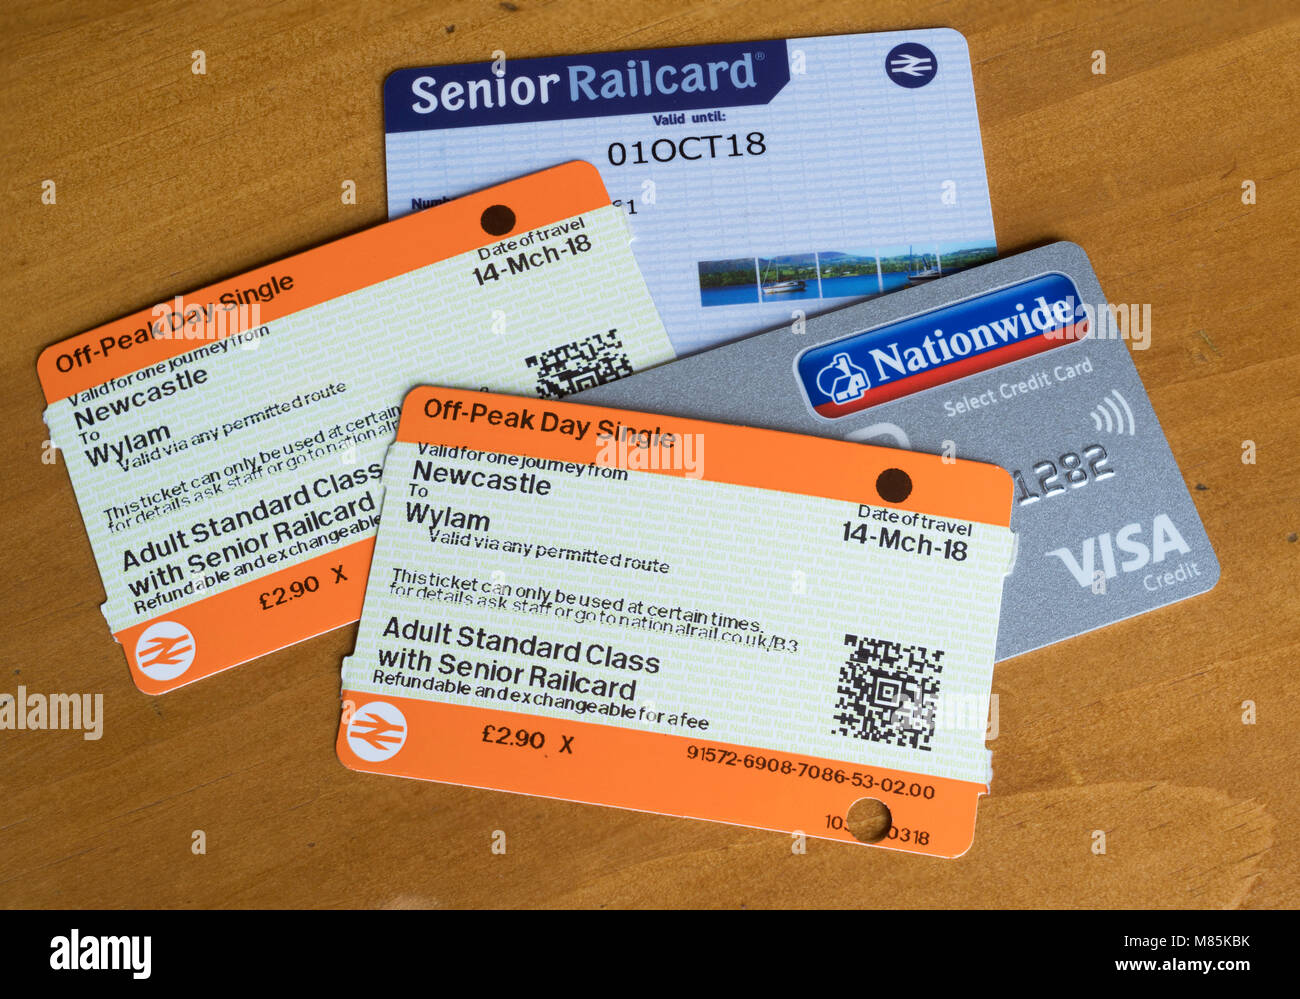 Bahn-tickets mit einem Senior Bahncard und eine Kreditkarte. Stockfoto